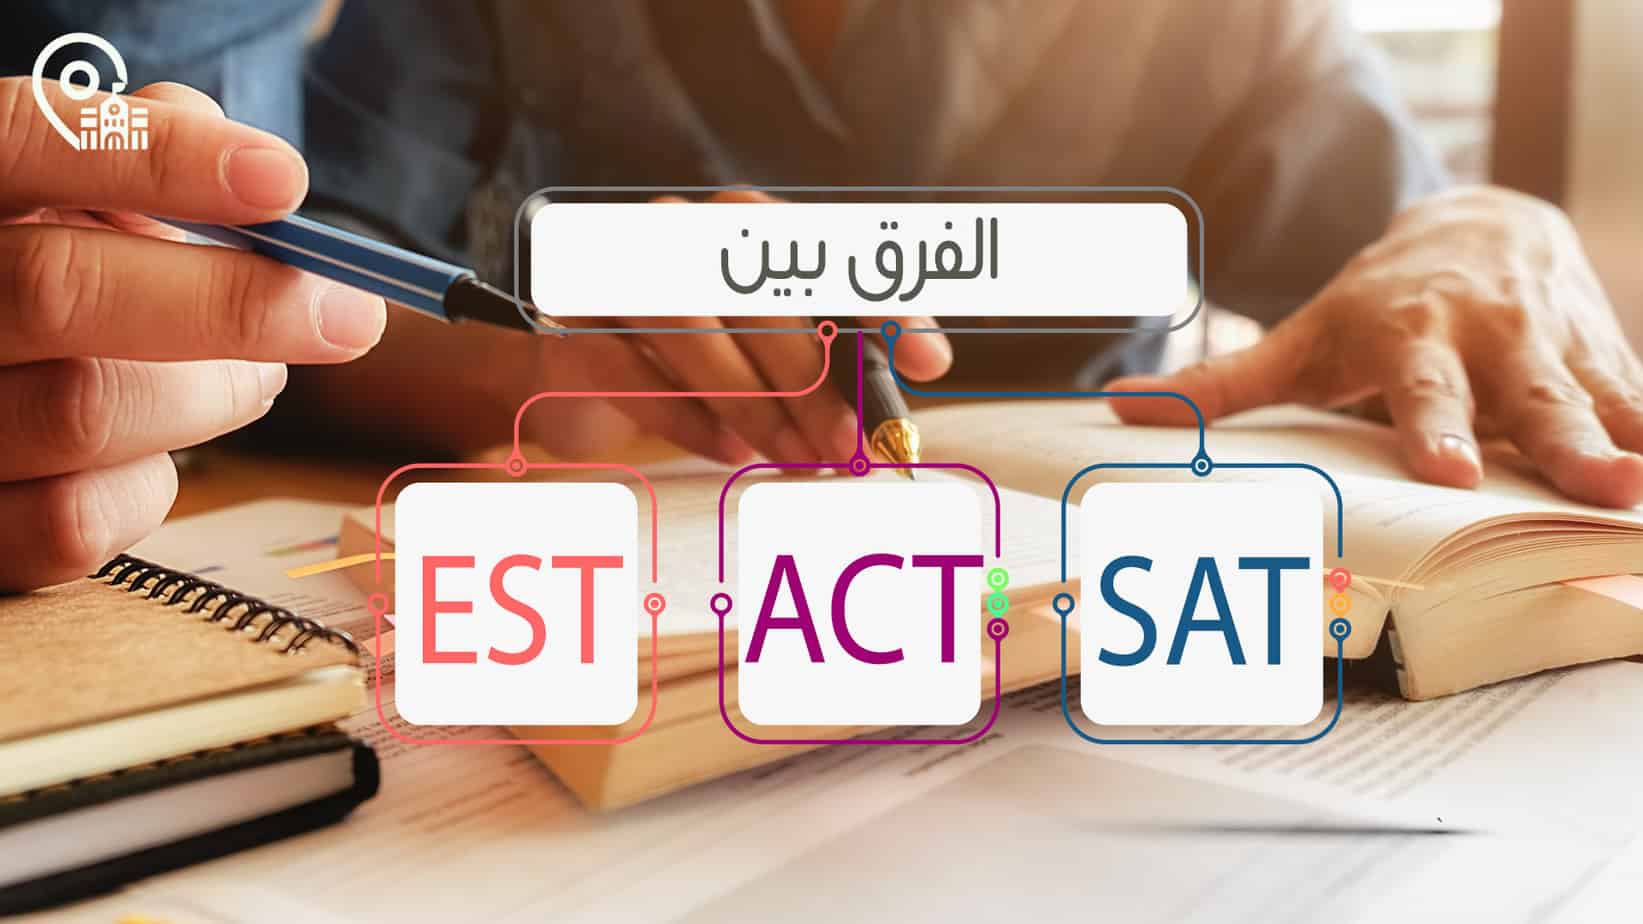 الفرق بين اختبار sat و act و est